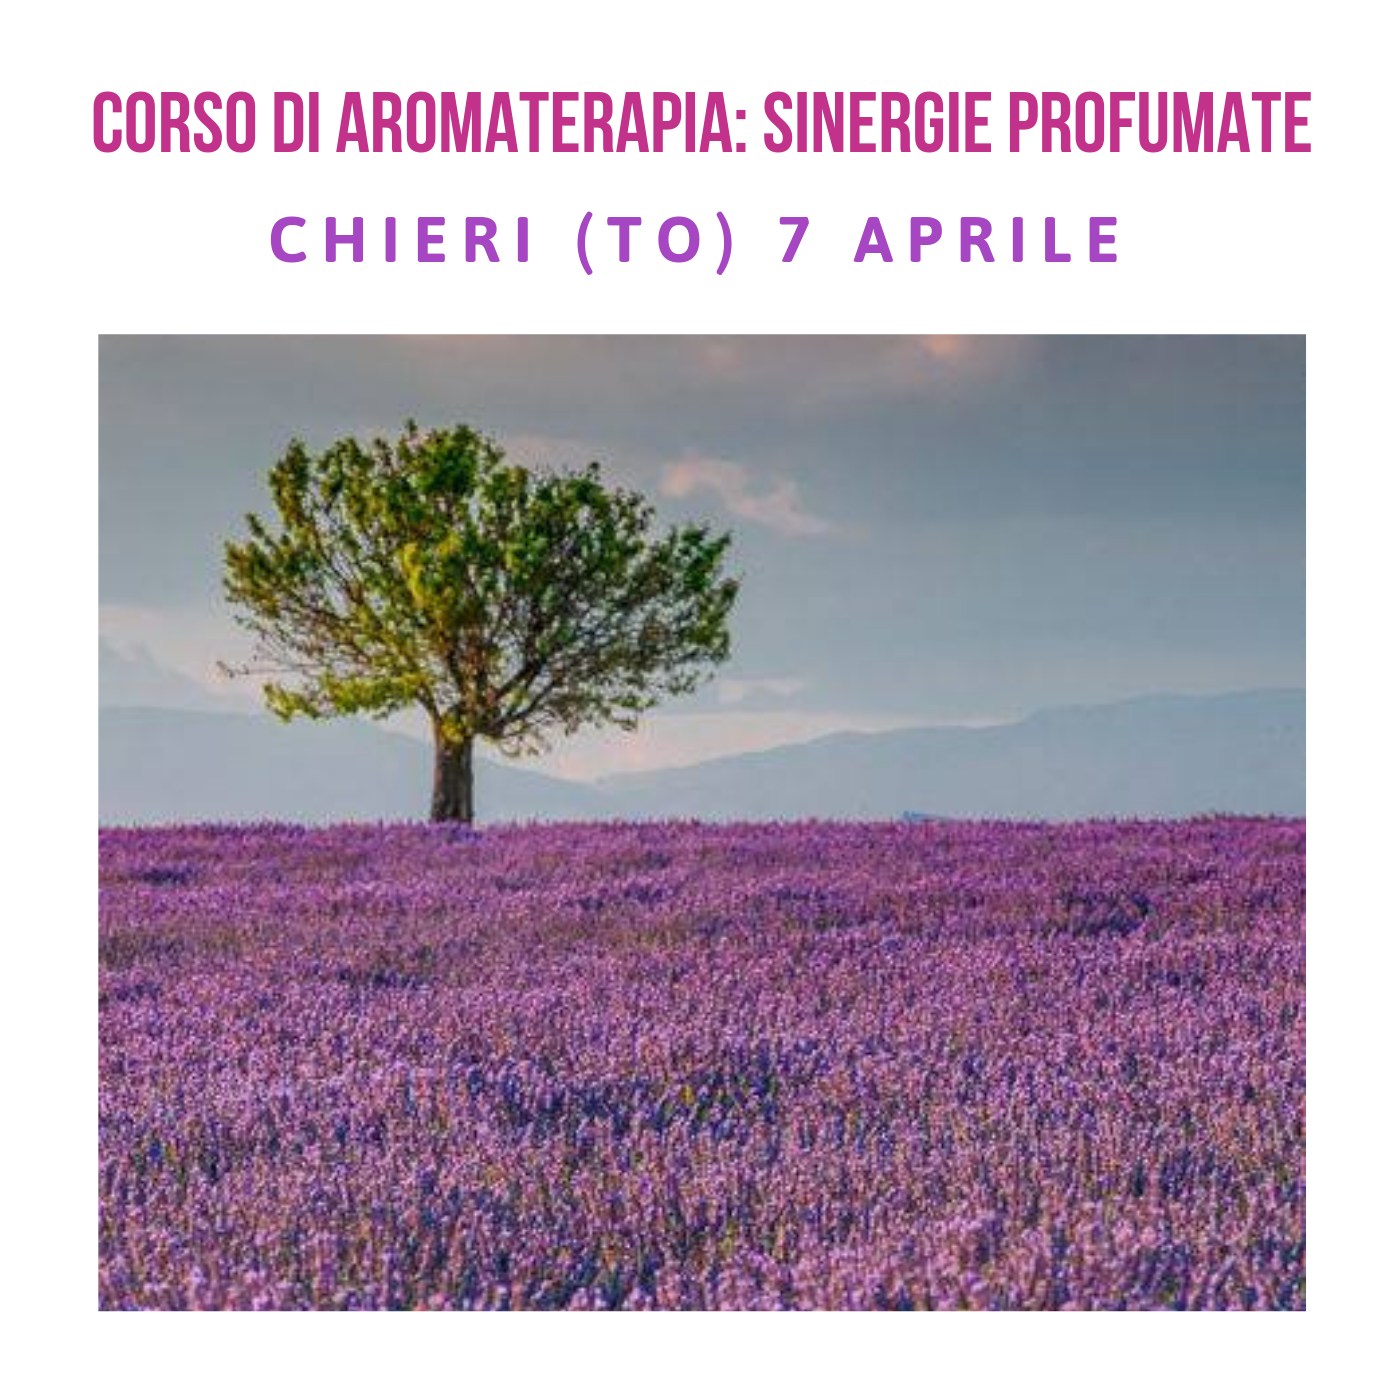 Corso di aromaterapia Torino 7 aprile: sinergie profumate con gli oli essenziali